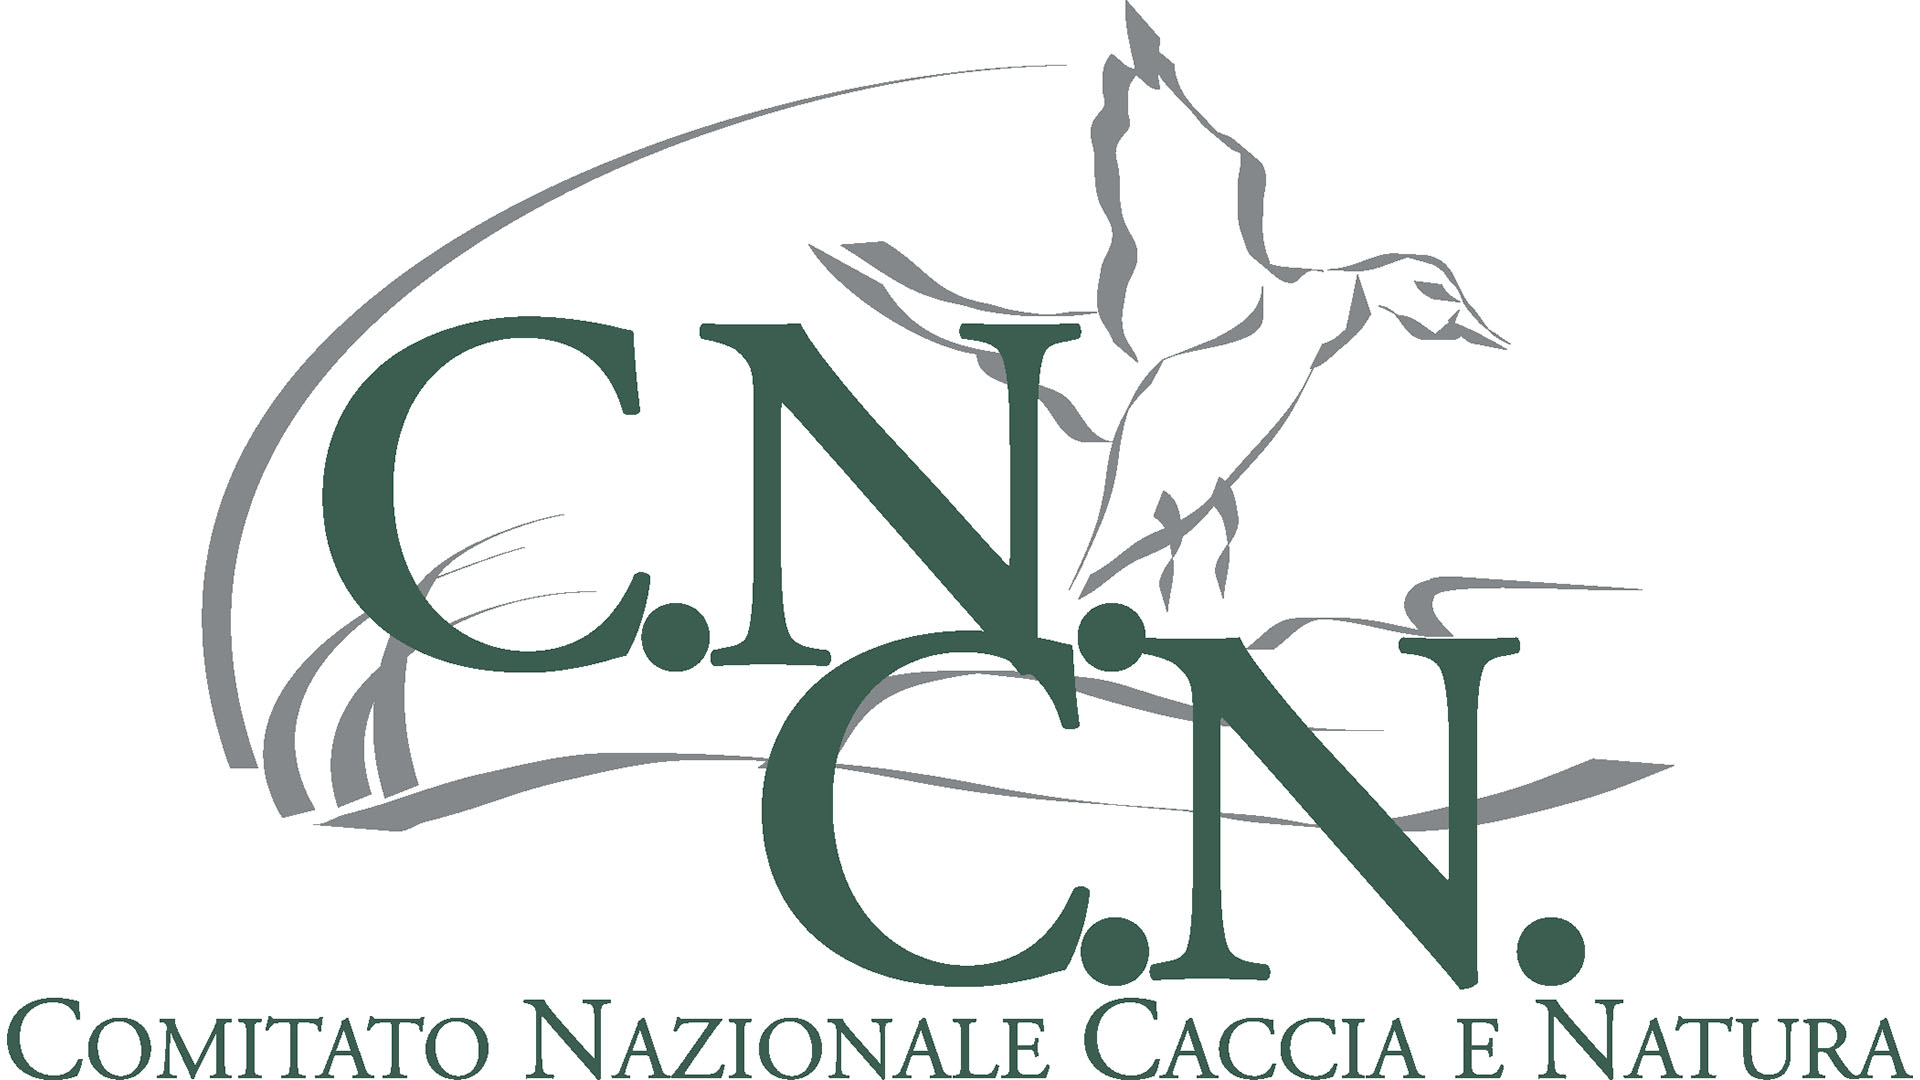 Il Cncn (Comitato nazionale caccia e natura)  un'organizzazione senza scopo di lucro fondata nel 1986 per iniziativa di operatori del settore, cacciatori e dall'associazione industriale del comparto Anpam con lo scopo di promuovere la cultura e la pratica della caccia sostenibile